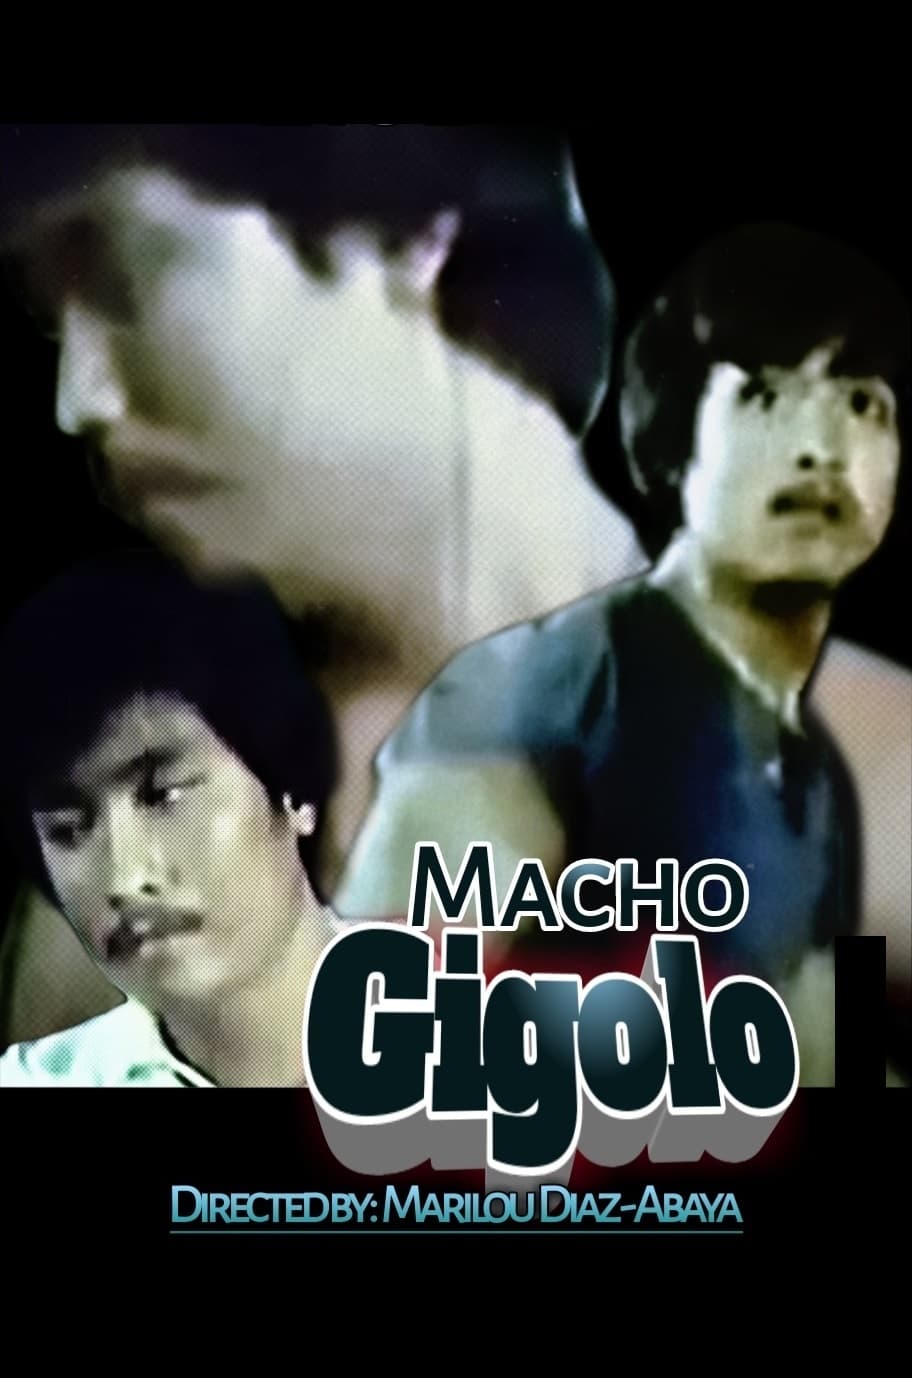 Macho Gigolo